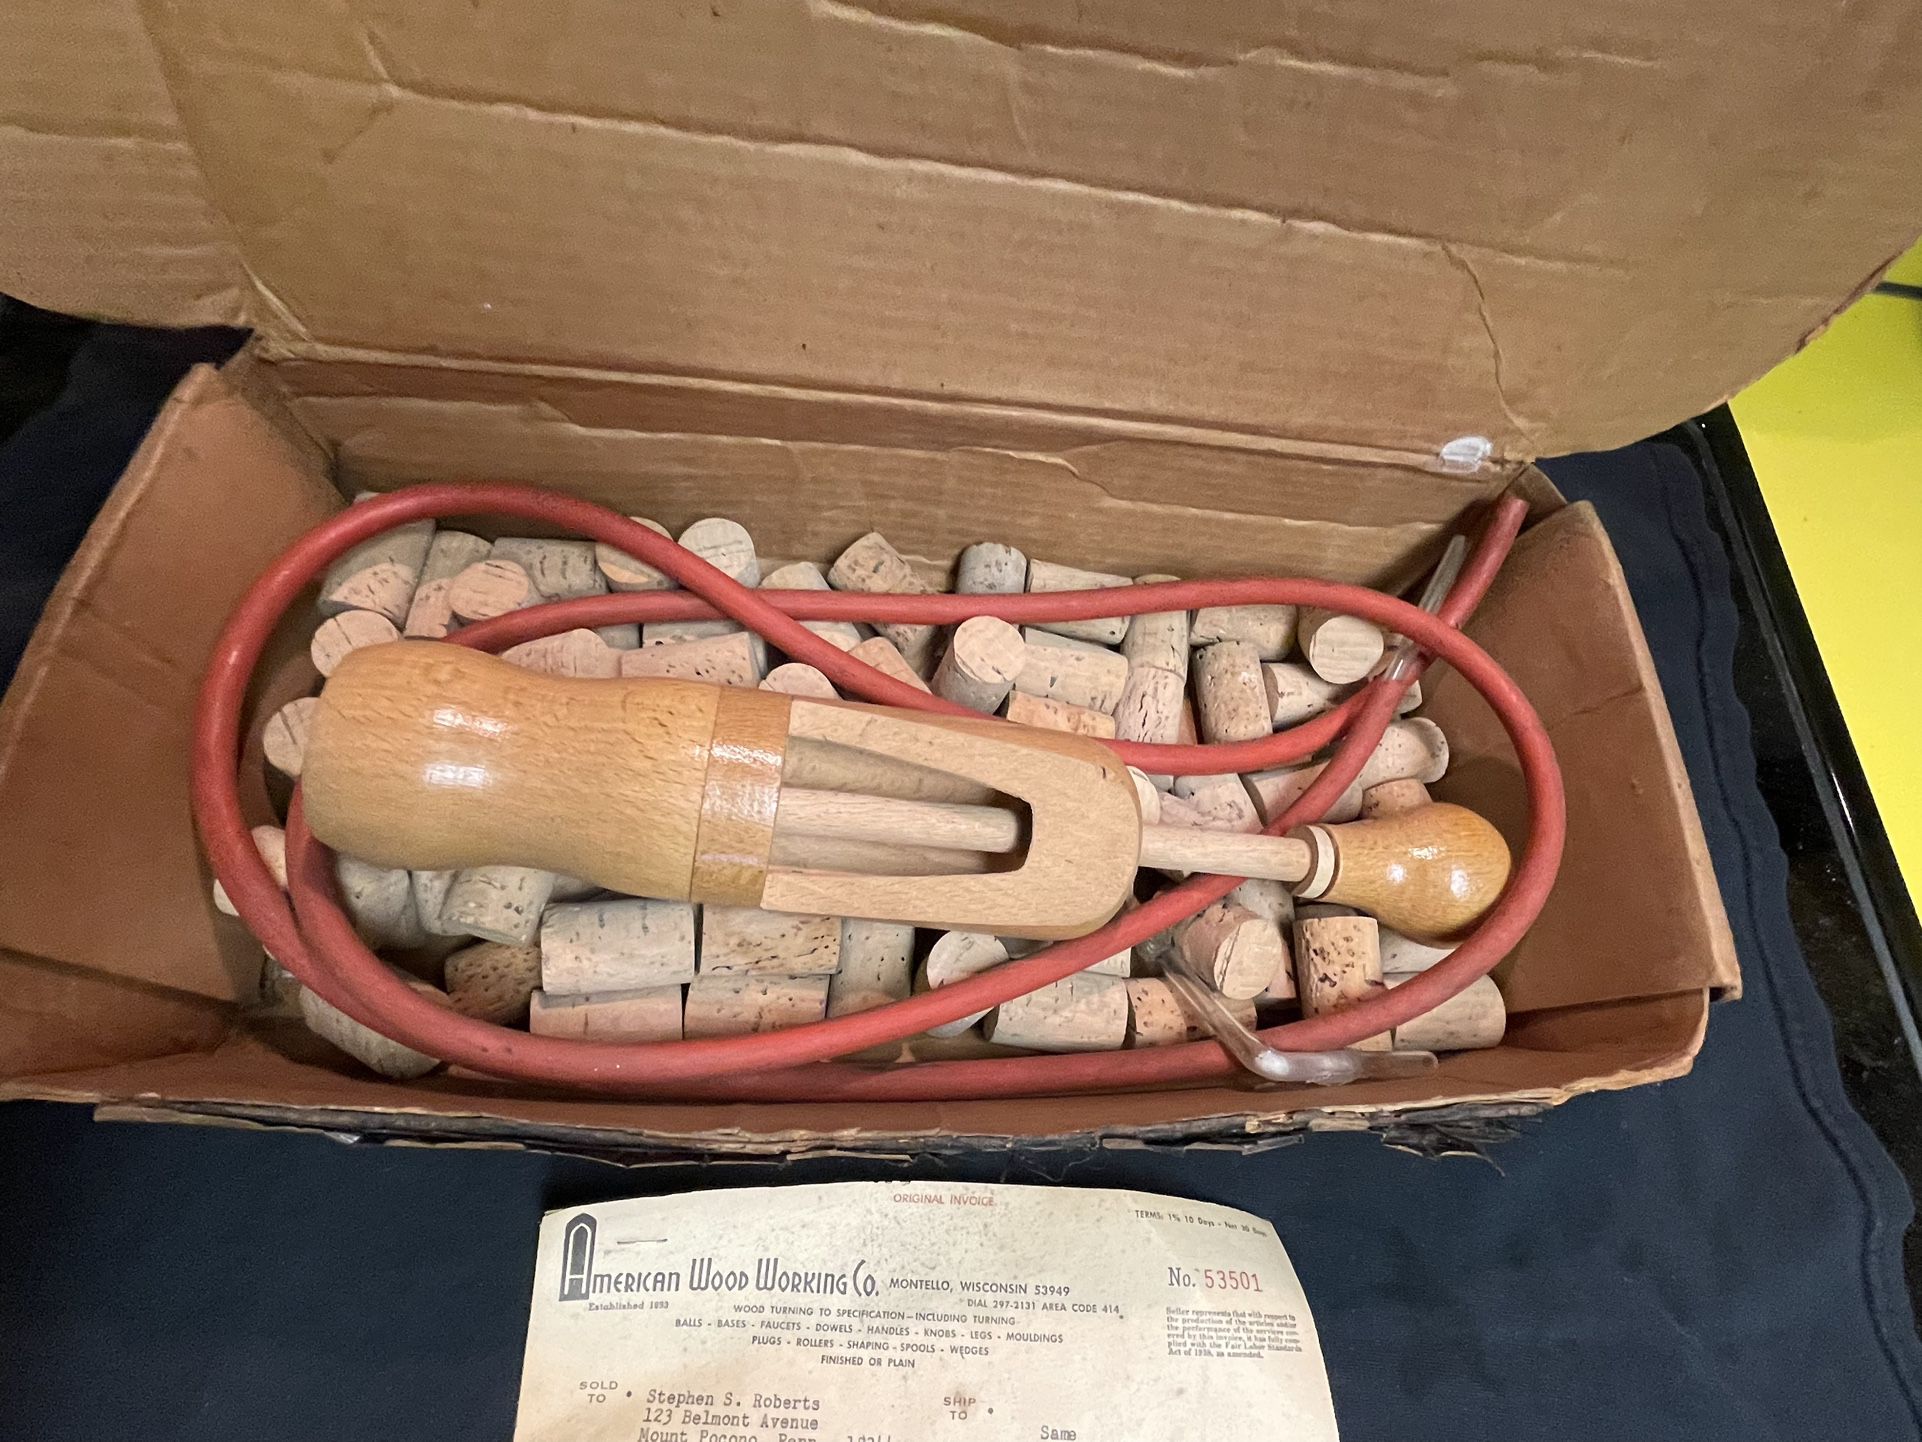 Vintage Wooden Hand Corker In Original Box With Original Receipt, 1966